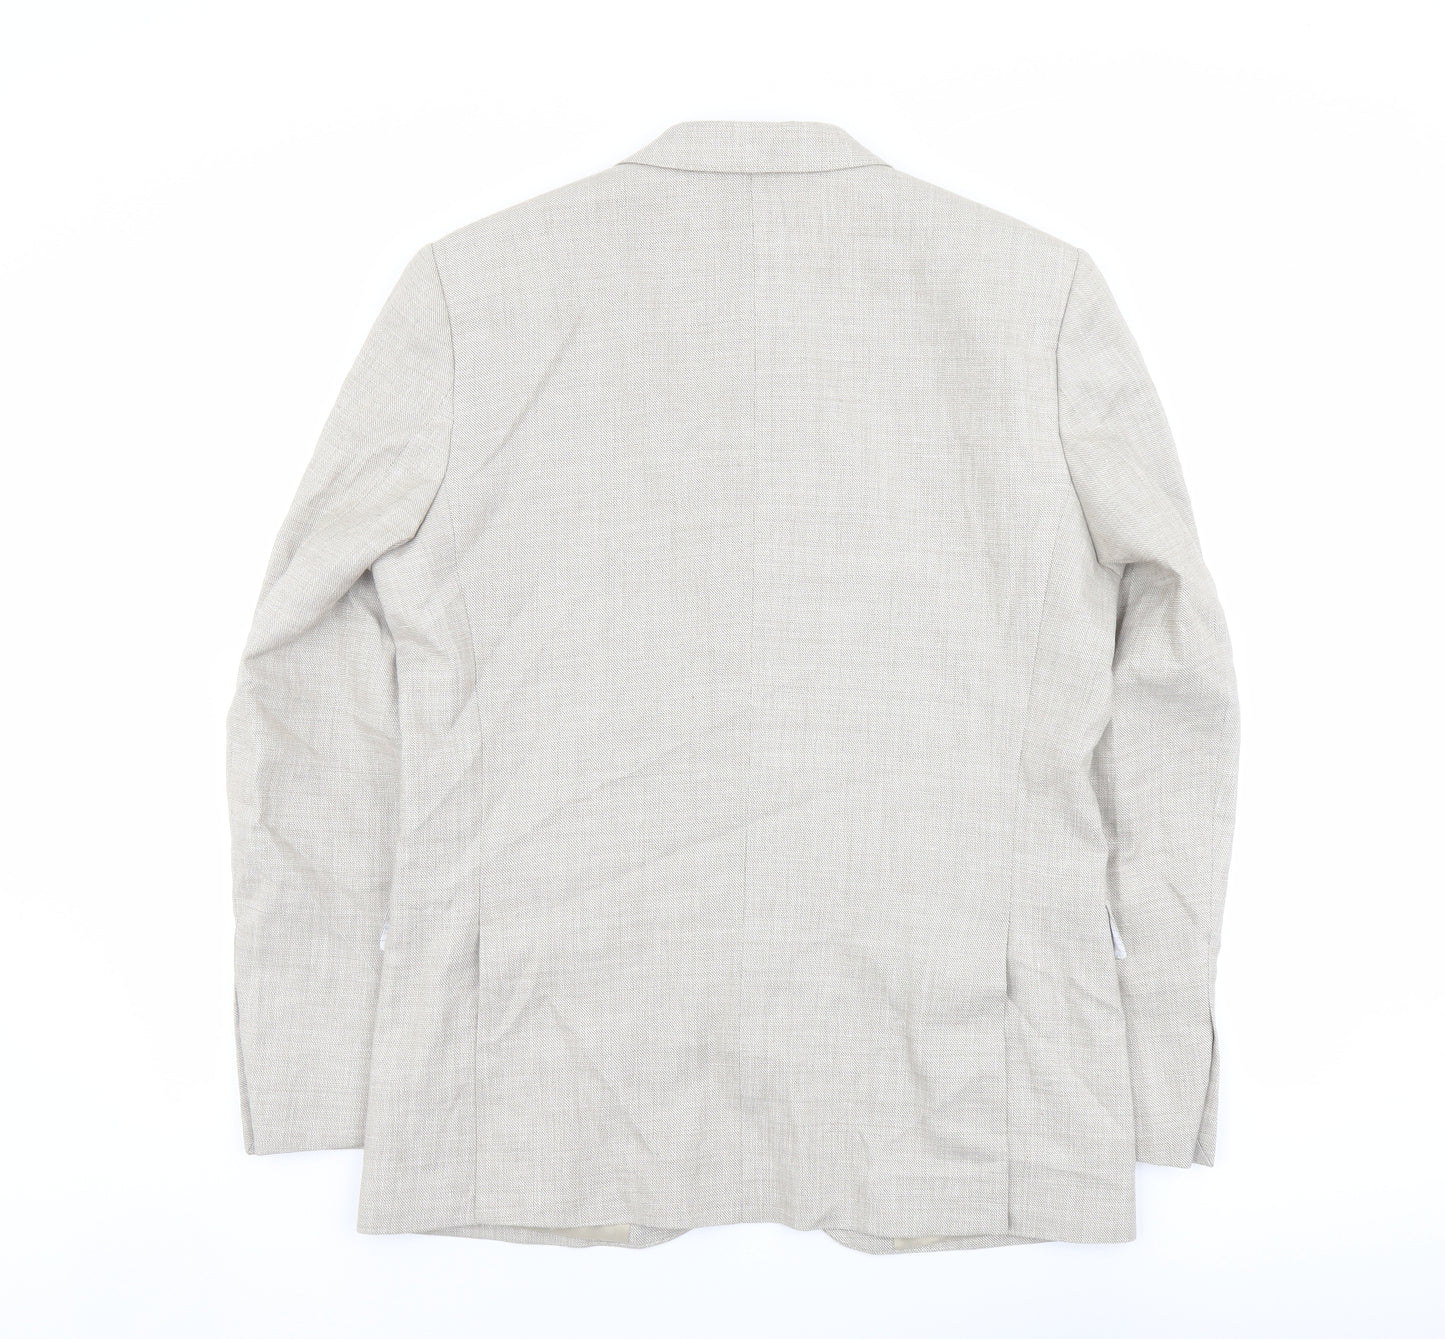 Marks and Spencer Mens Beige Polyester Jacket Suit Jacket Size 42 Regular